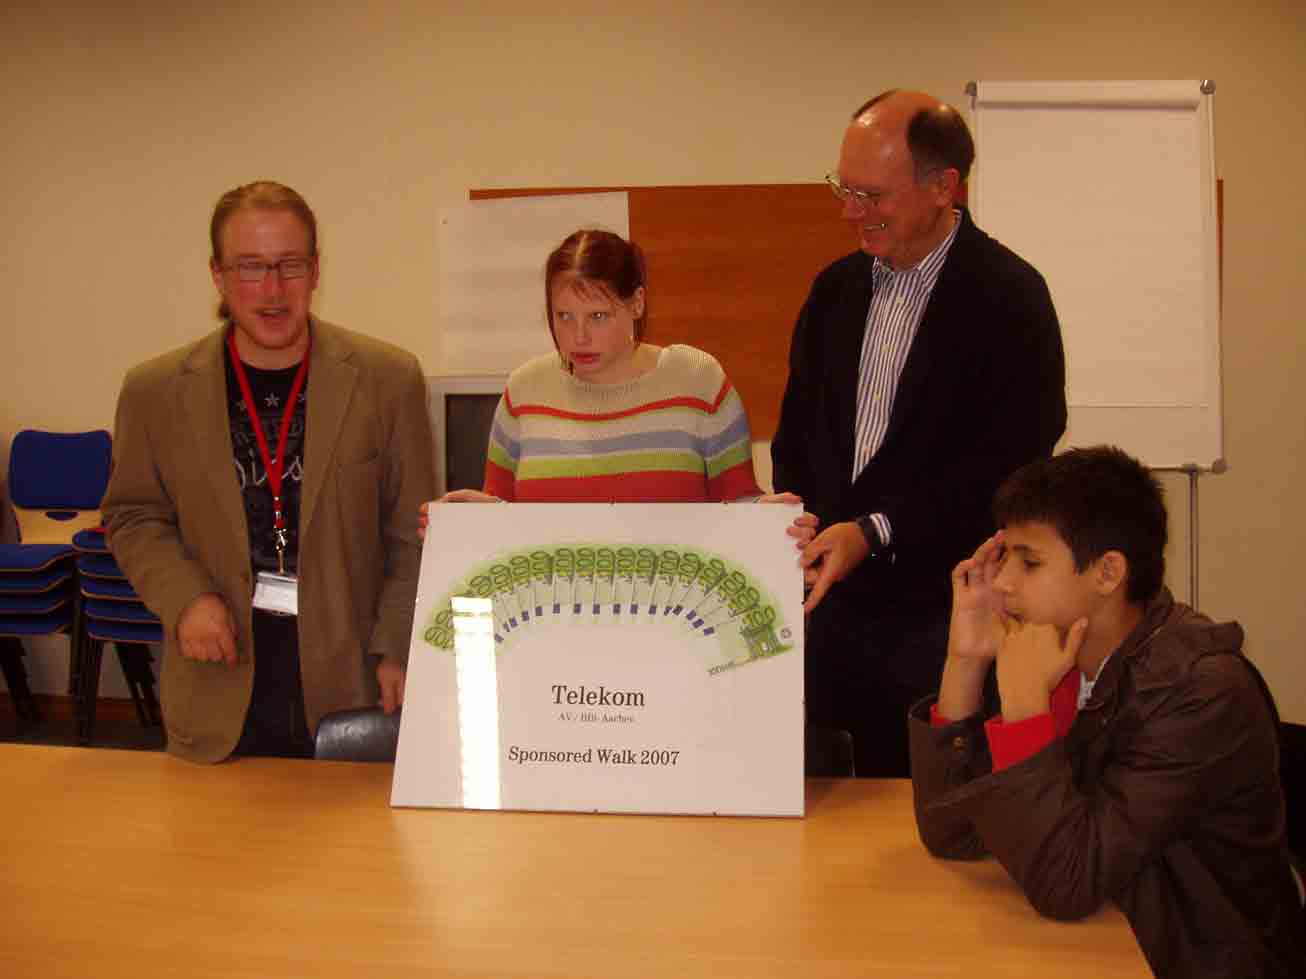 Dennis Ürlings übergibt 18 Scheine im Wert von je 100  an die Schülersprecherin Angela Quentmeier. Die Scheine sind im Halbkreis auf einem Bild angeordnet. Herr Franz schaut lächelnd zu.